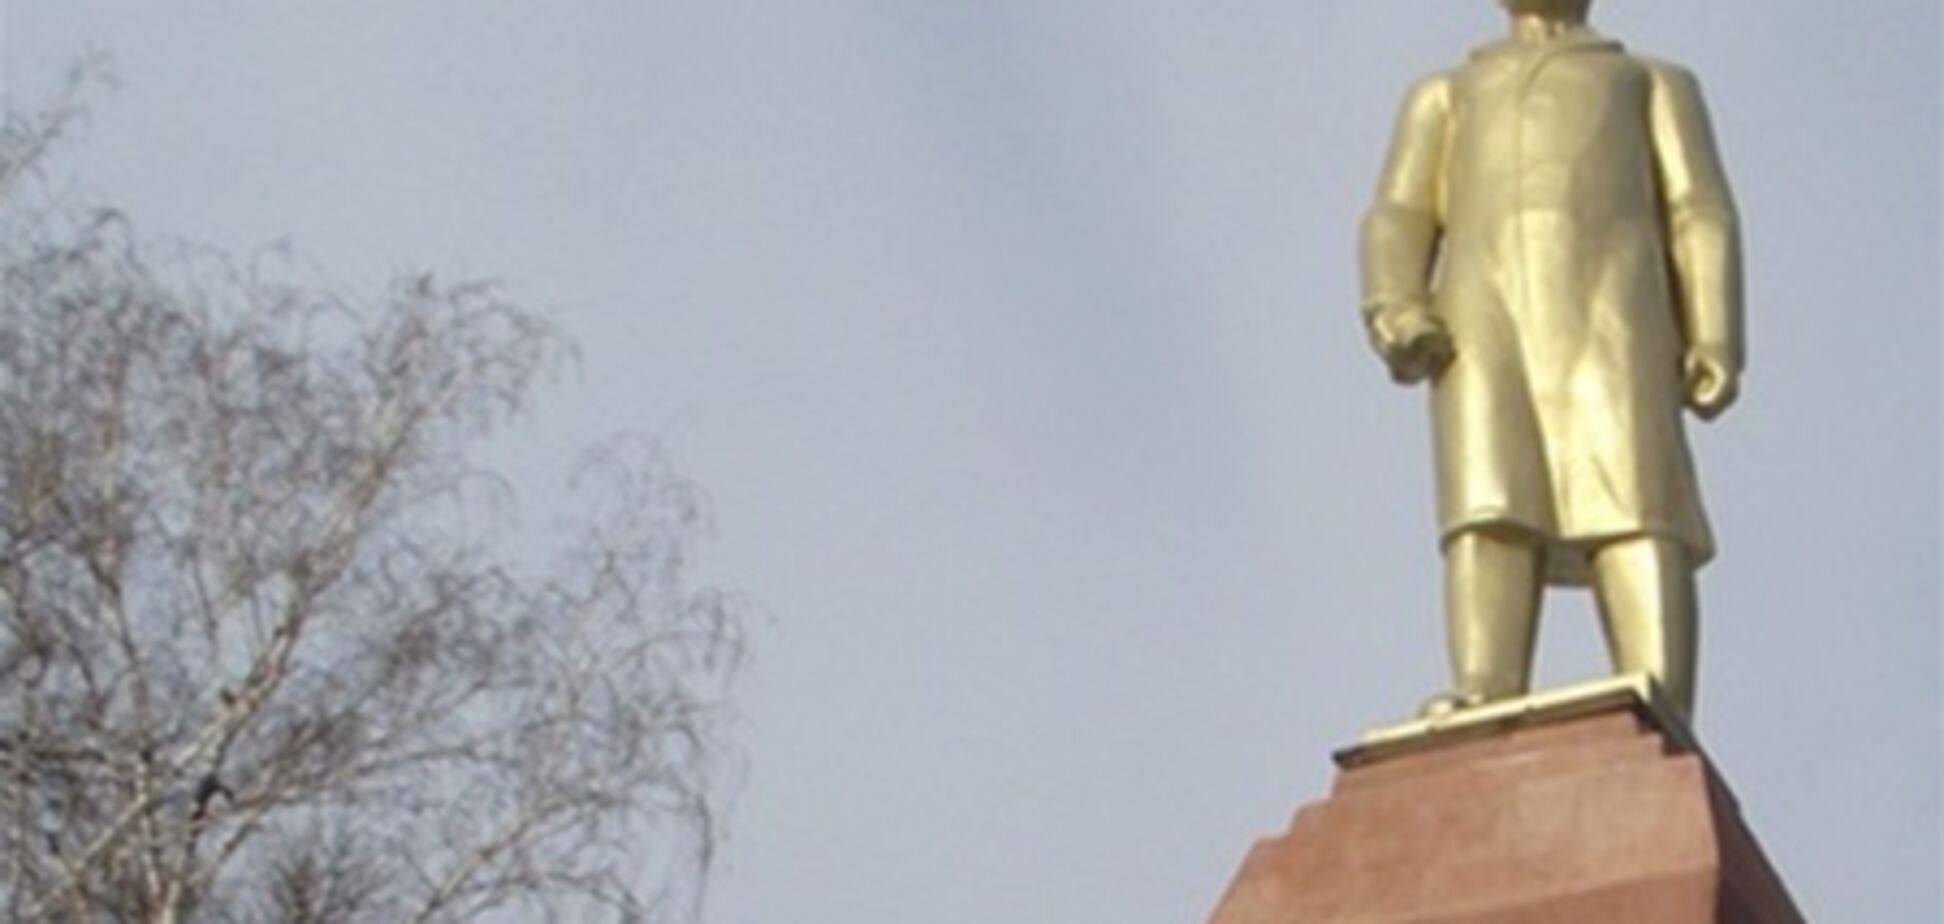 Новый памятник Ленину поставил в тупик власть Ахтырки